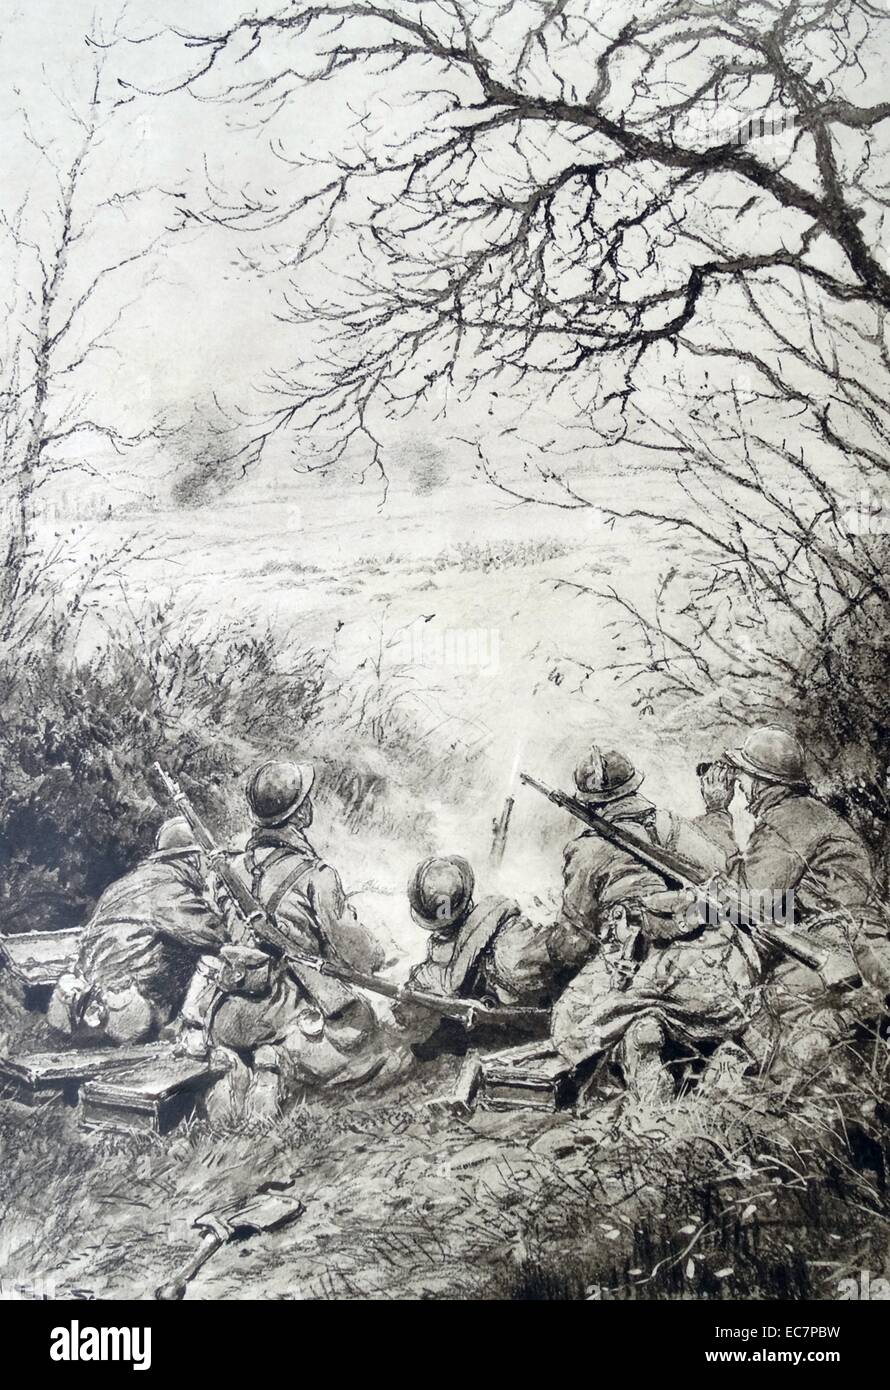 französische Artillerie-Feuer in einer Schlacht im ersten Weltkrieg Stockfoto